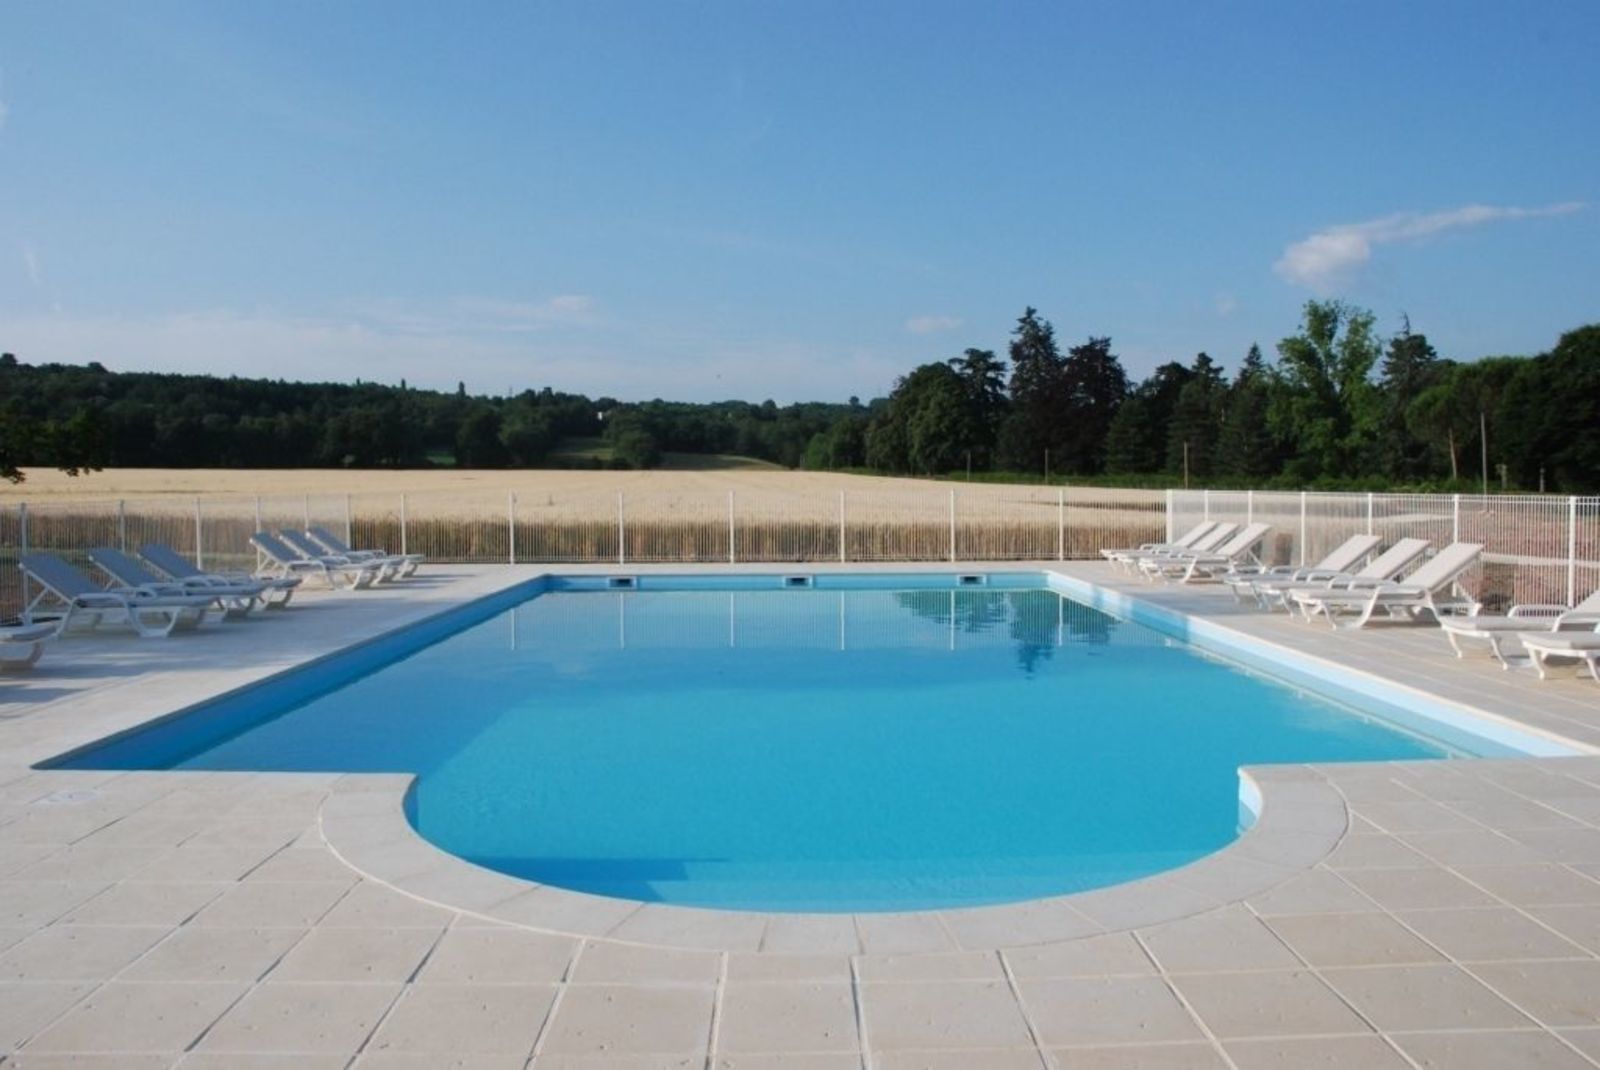 Domaine de Valence - Le Colombier luxe vakantievilla met zwembad in Frankrijk